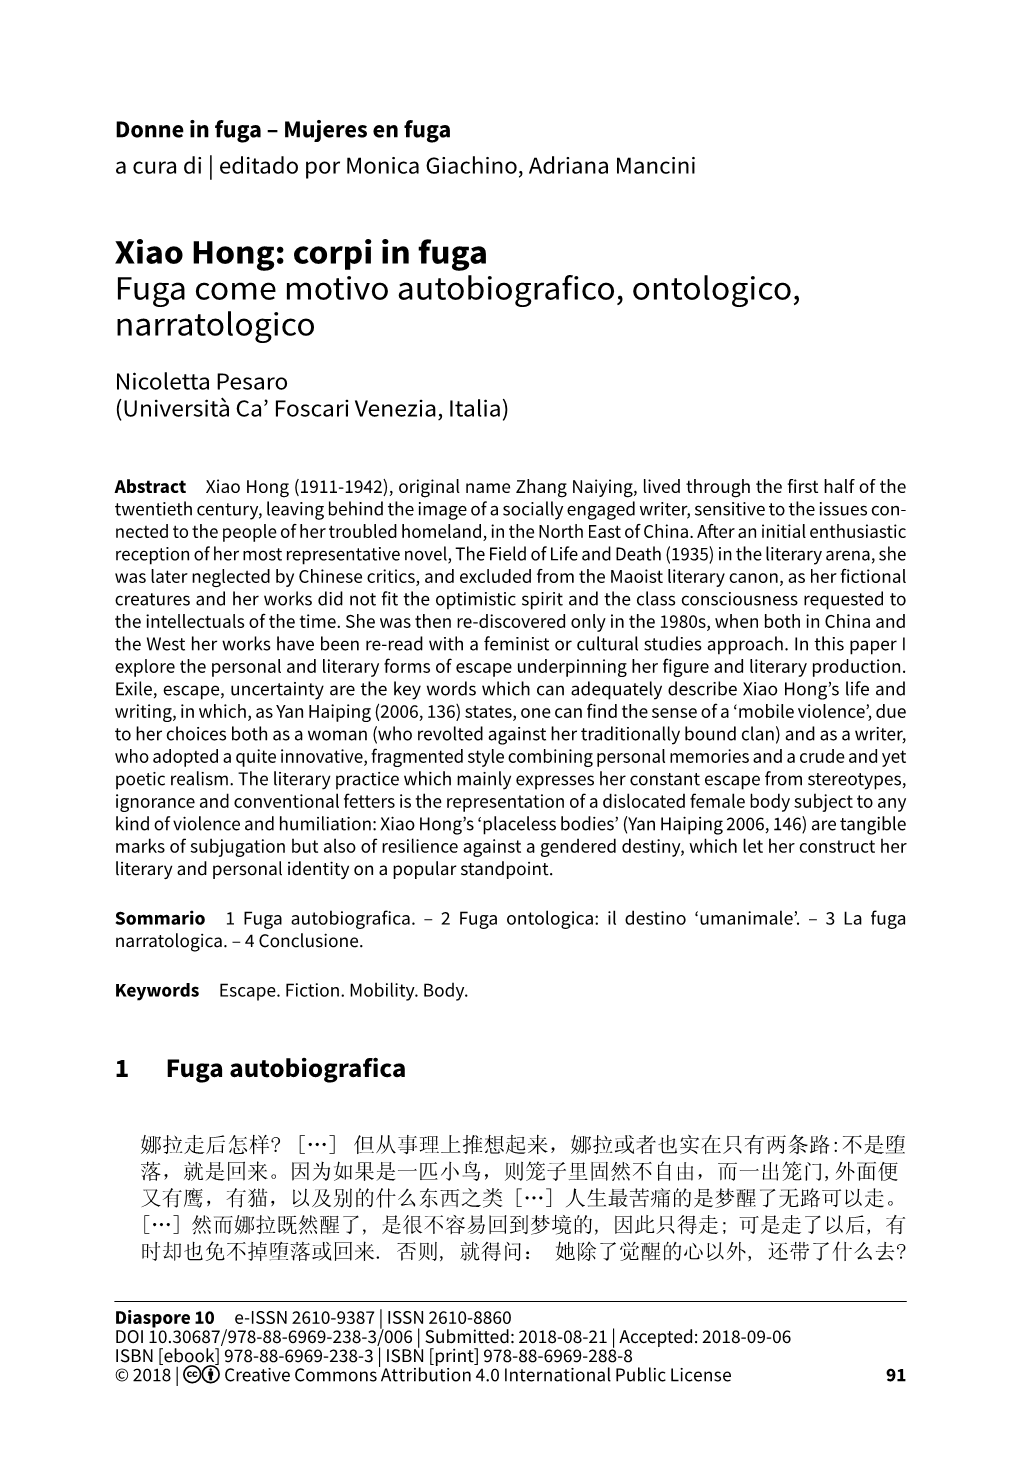 Xiao Hong: Corpi in Fuga Fuga Come Motivo Autobiografico, Ontologico, Narratologico